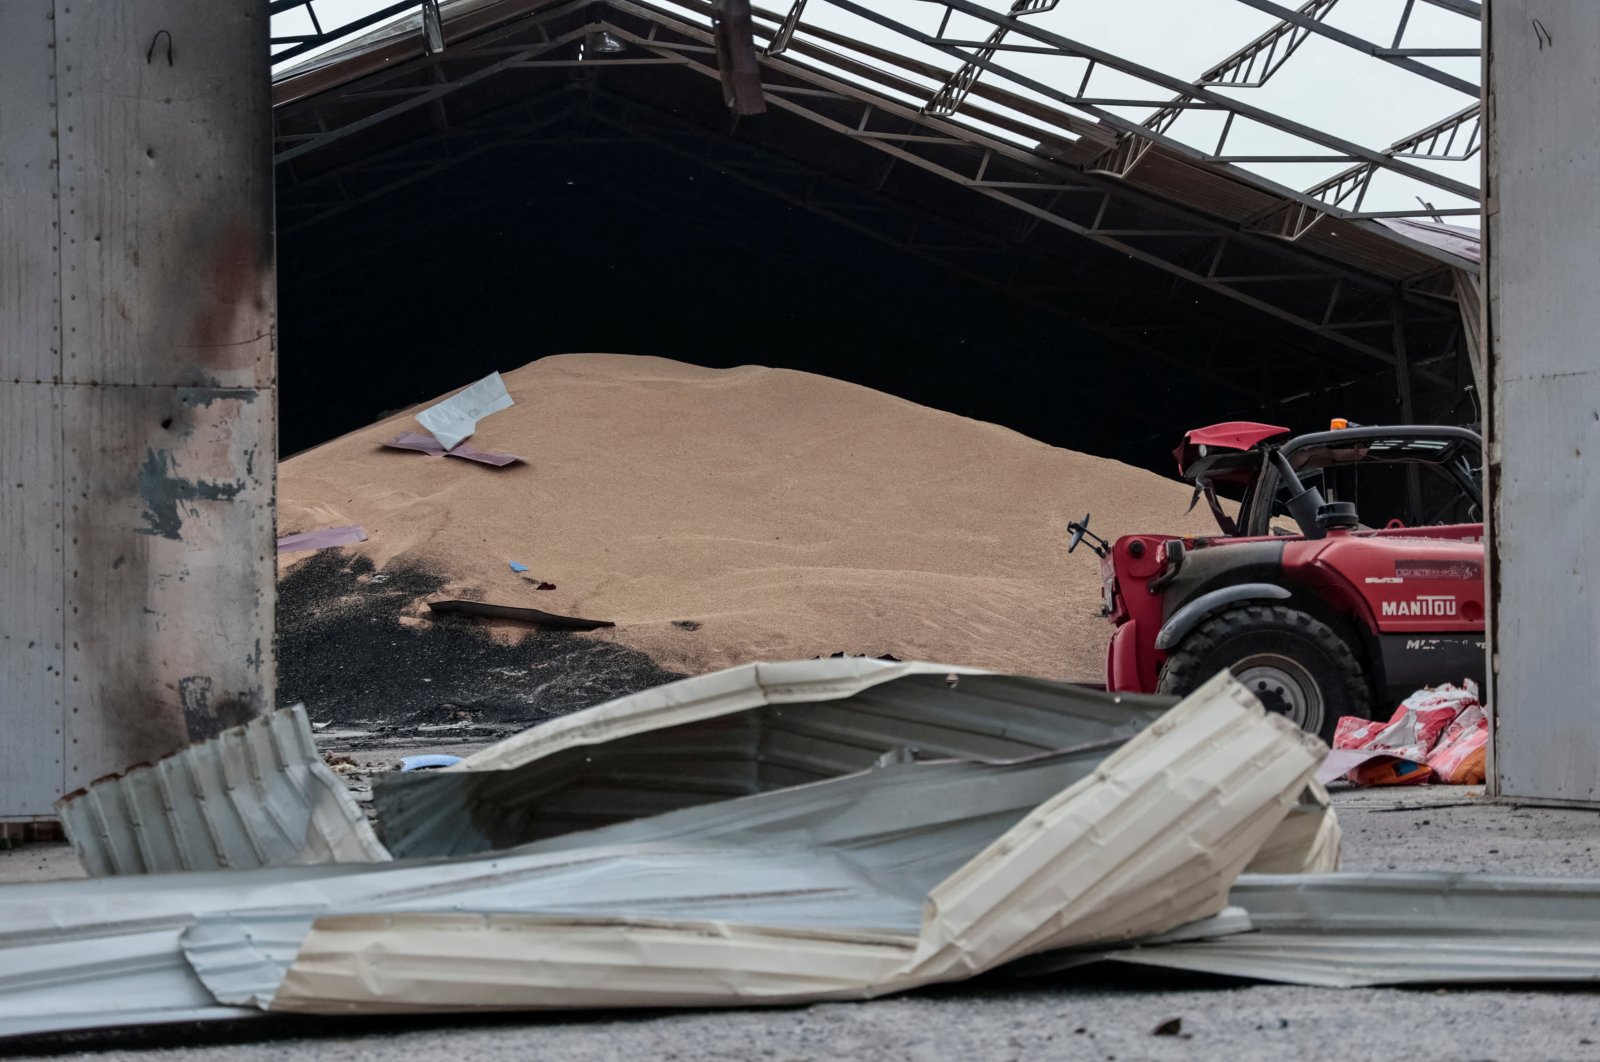 Turki mendorong kesepakatan ekspor gandum Ukraina sebagai pertemuan penting